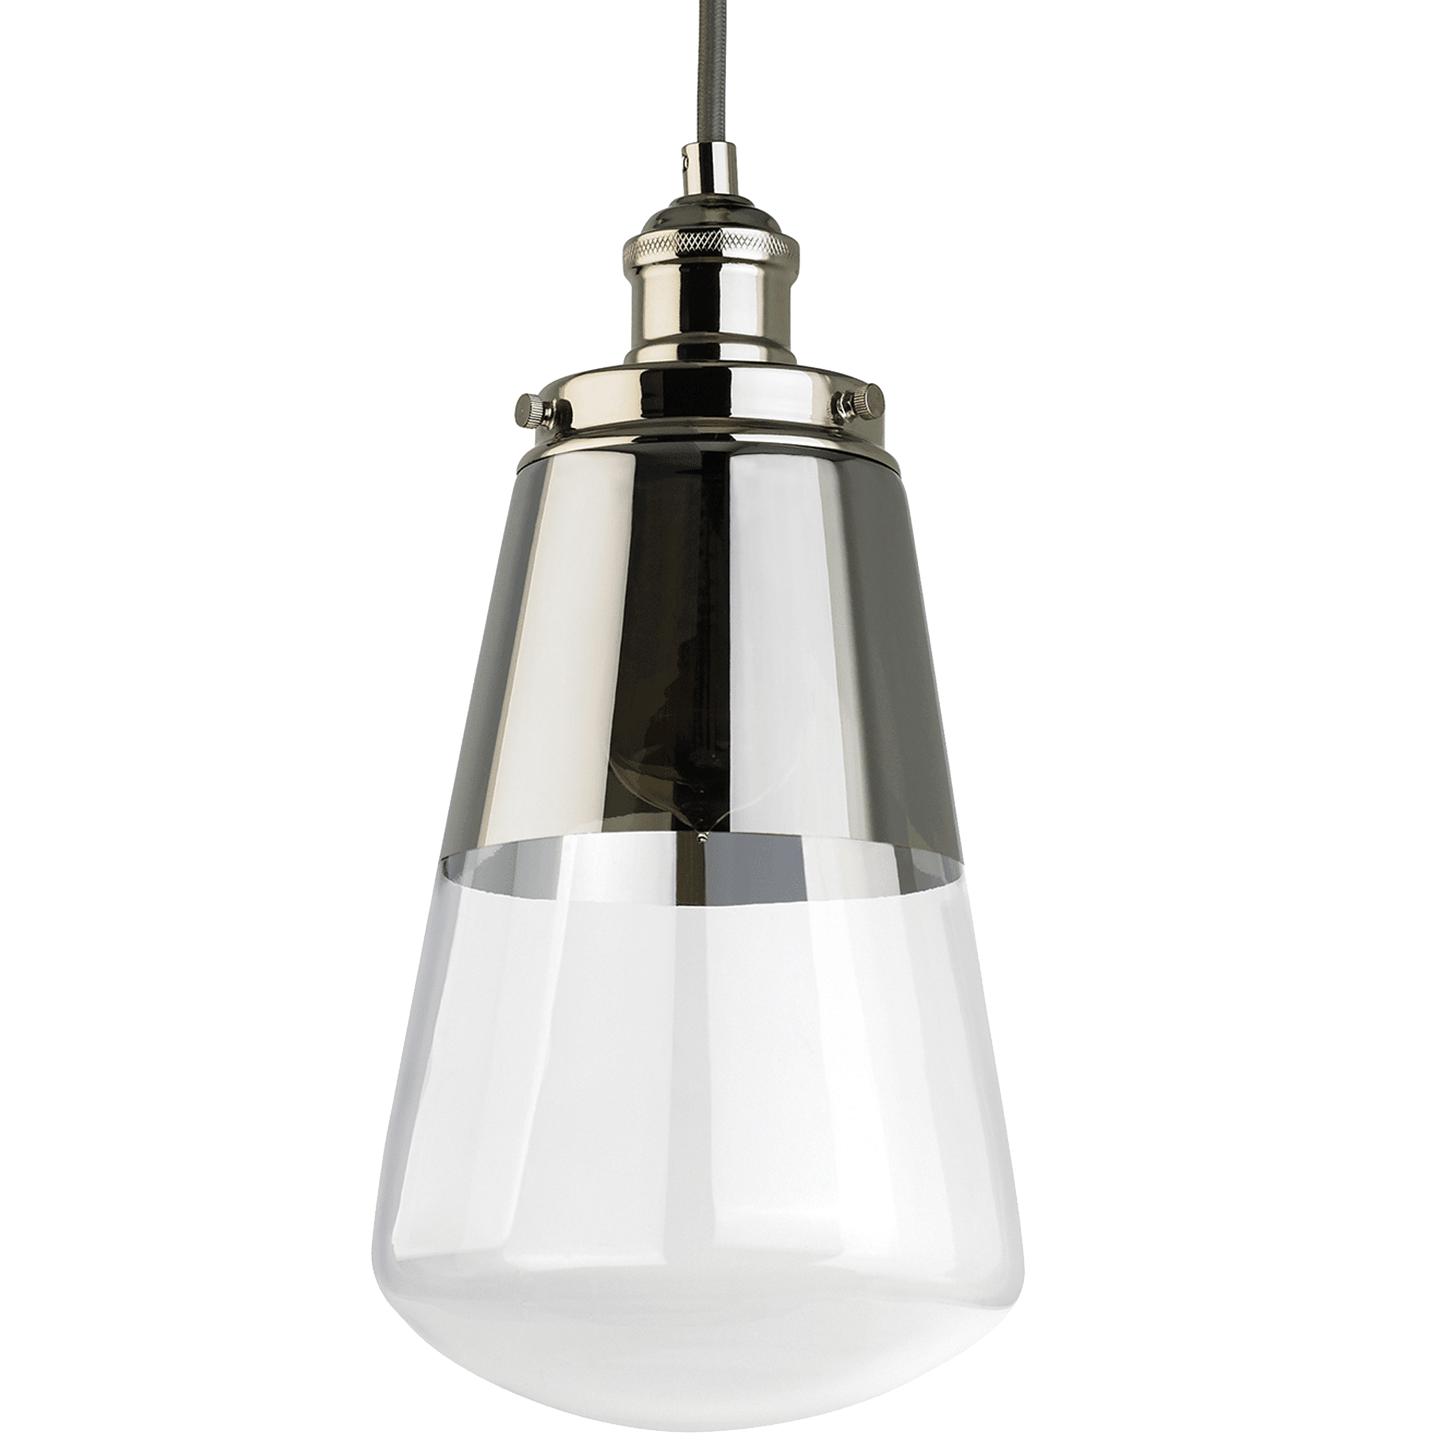 Купить Подвесной светильник Waveform Mini-Pendant в интернет-магазине roooms.ru